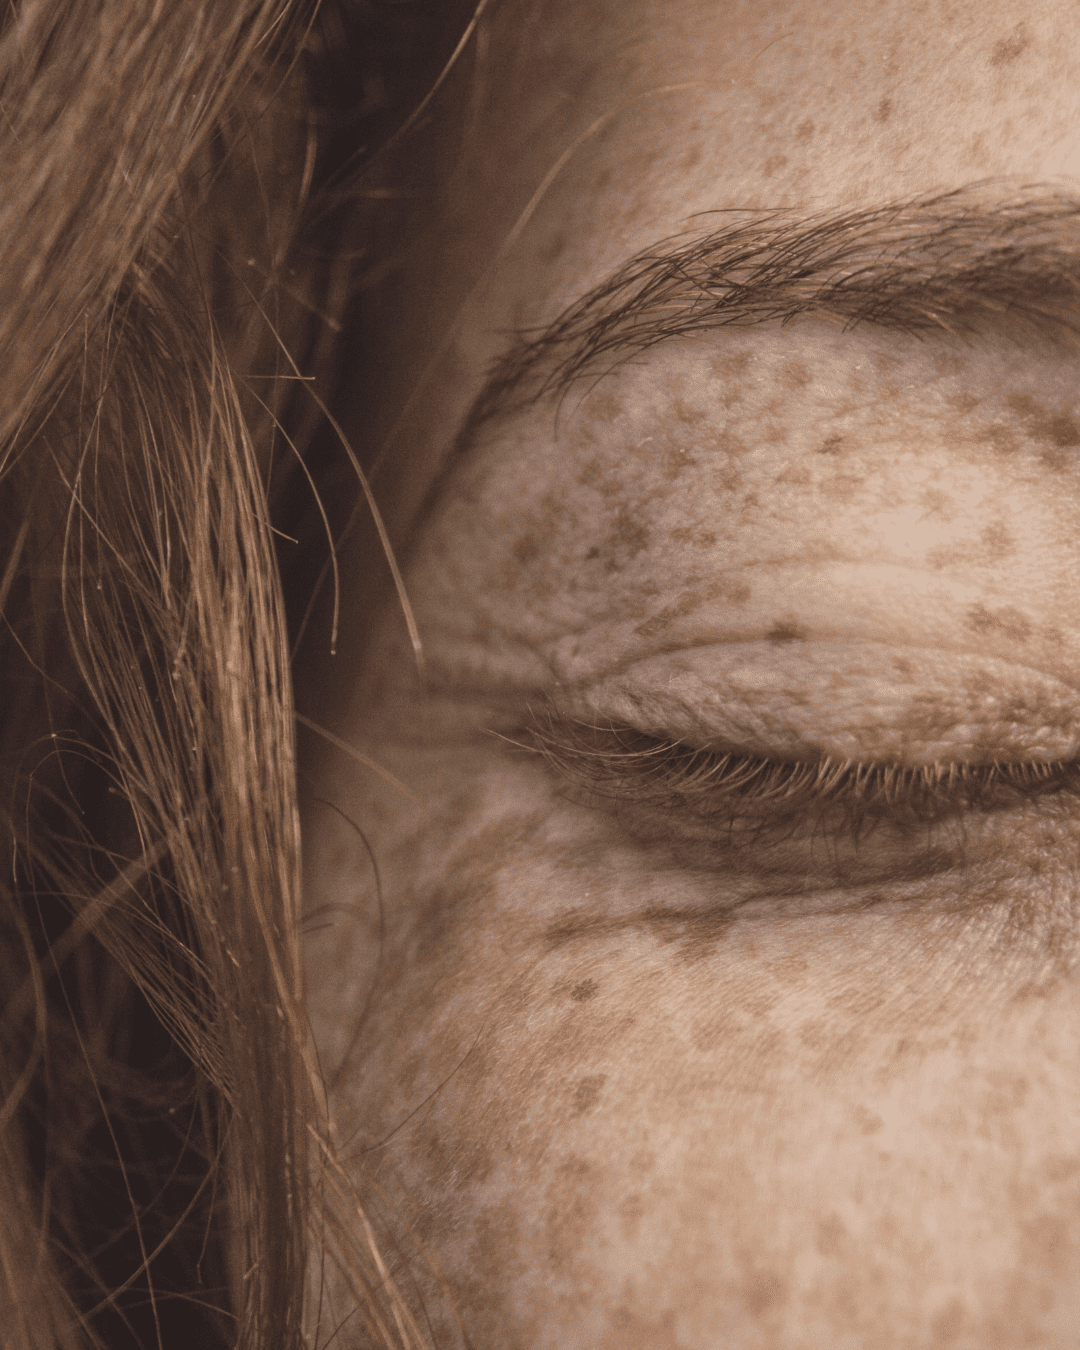 Article : Unreine Haut: 6 Schritte für ein reines Hautbild